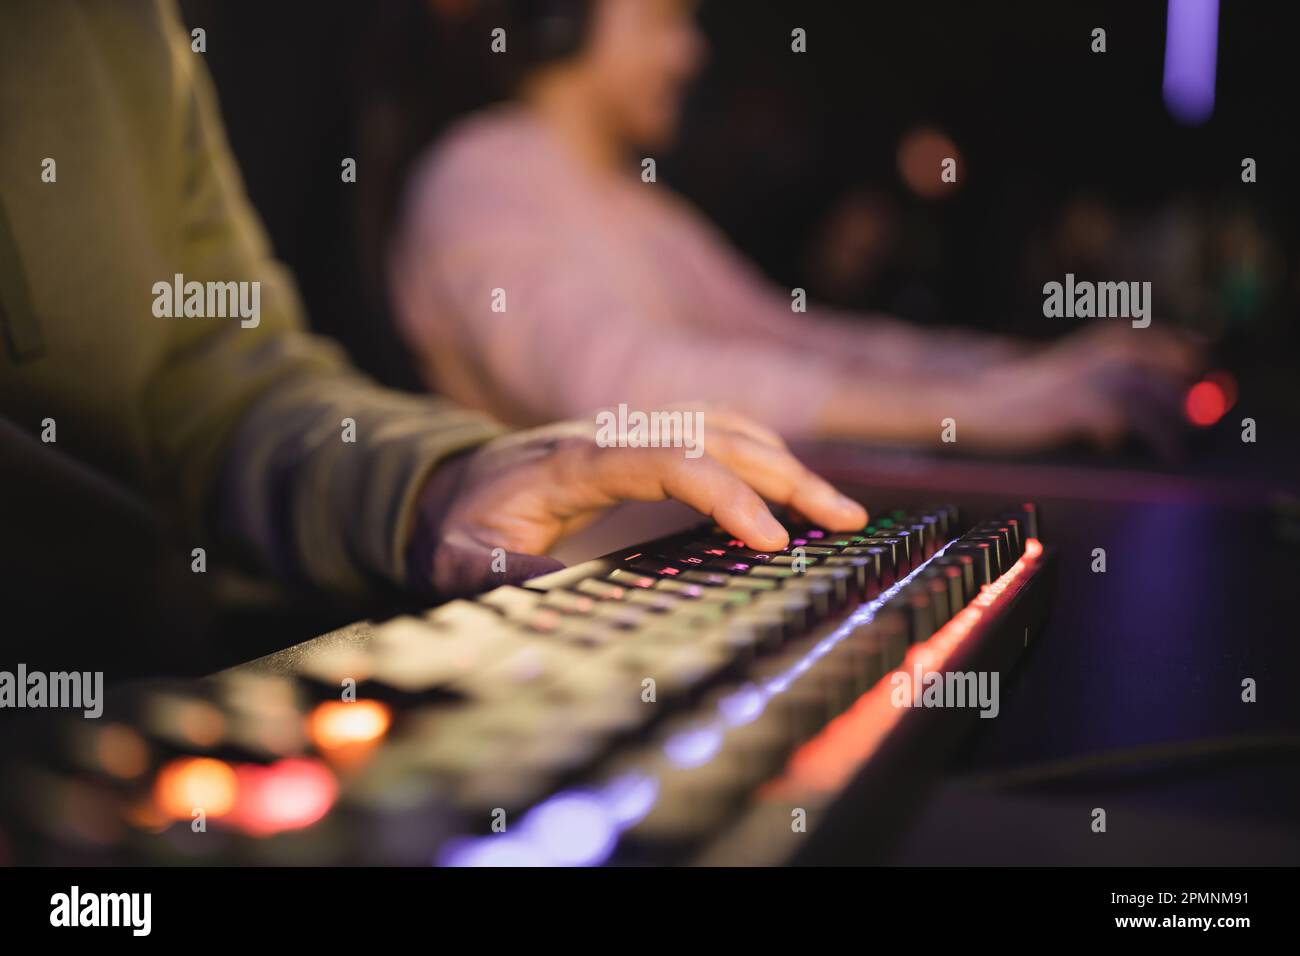 Vue rognée de l'homme en utilisant un clavier d'ordinateur avec éclairage dans cyber club, image de stock Banque D'Images